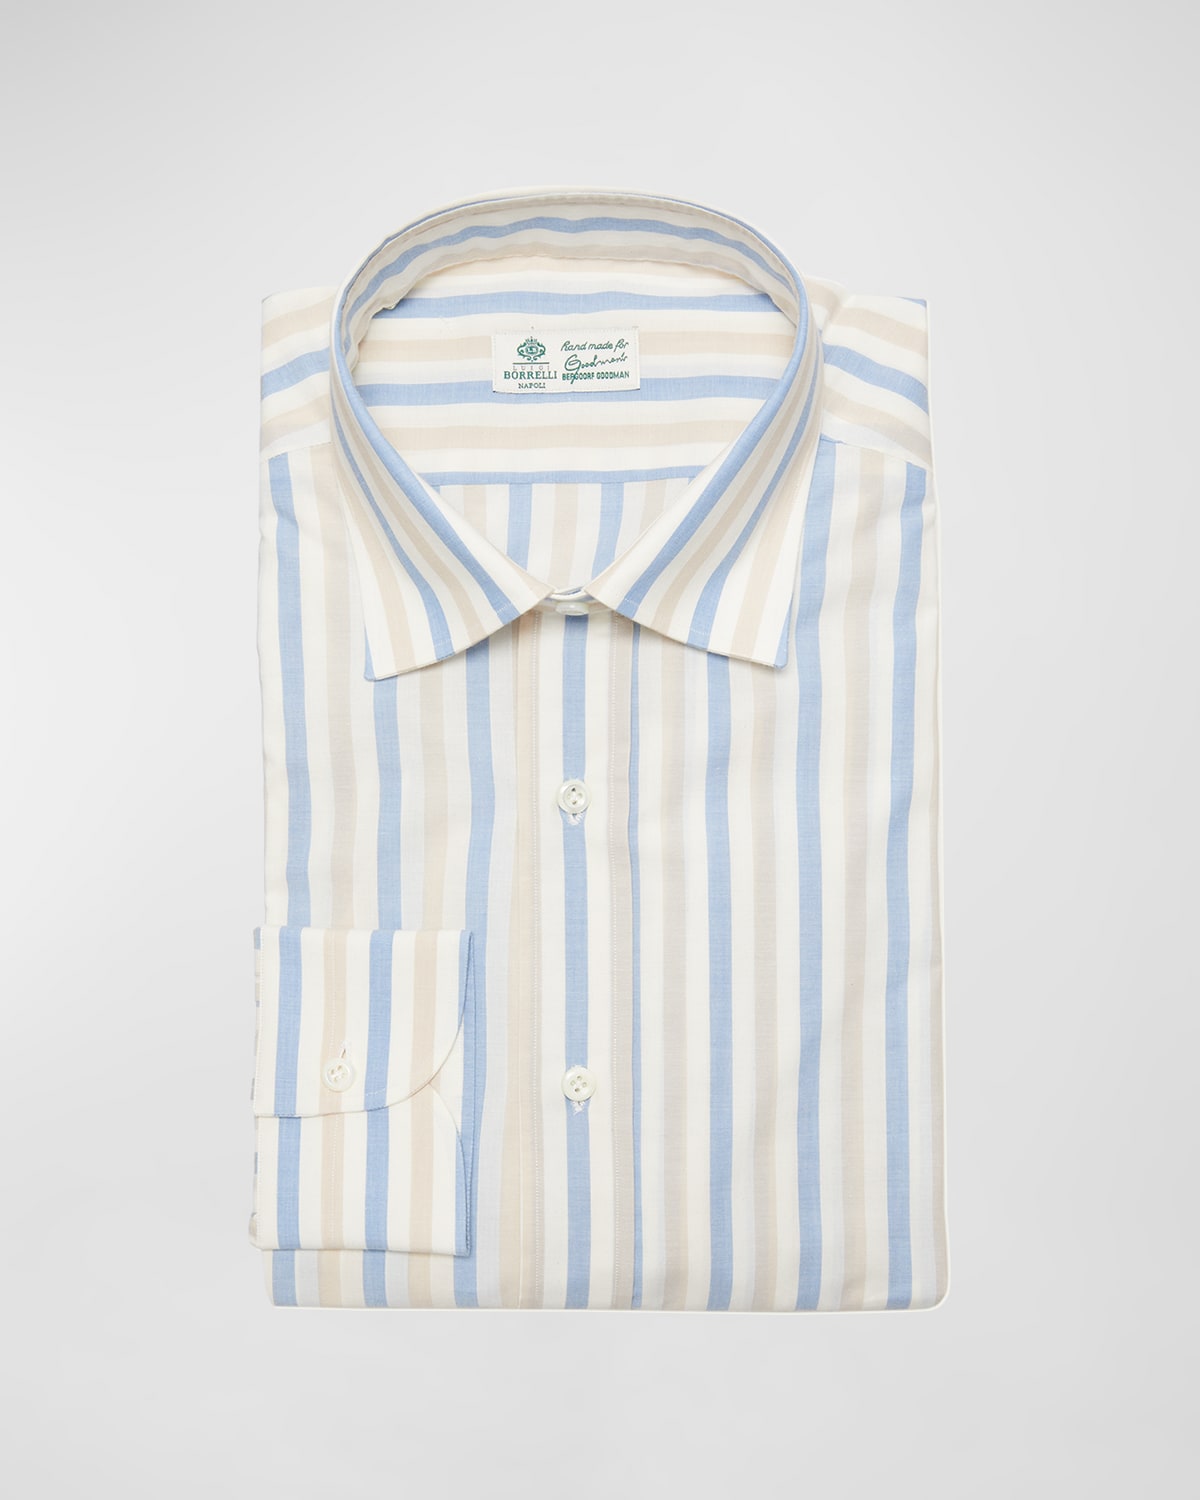 Men's Cotton Stripe Dress Shirt